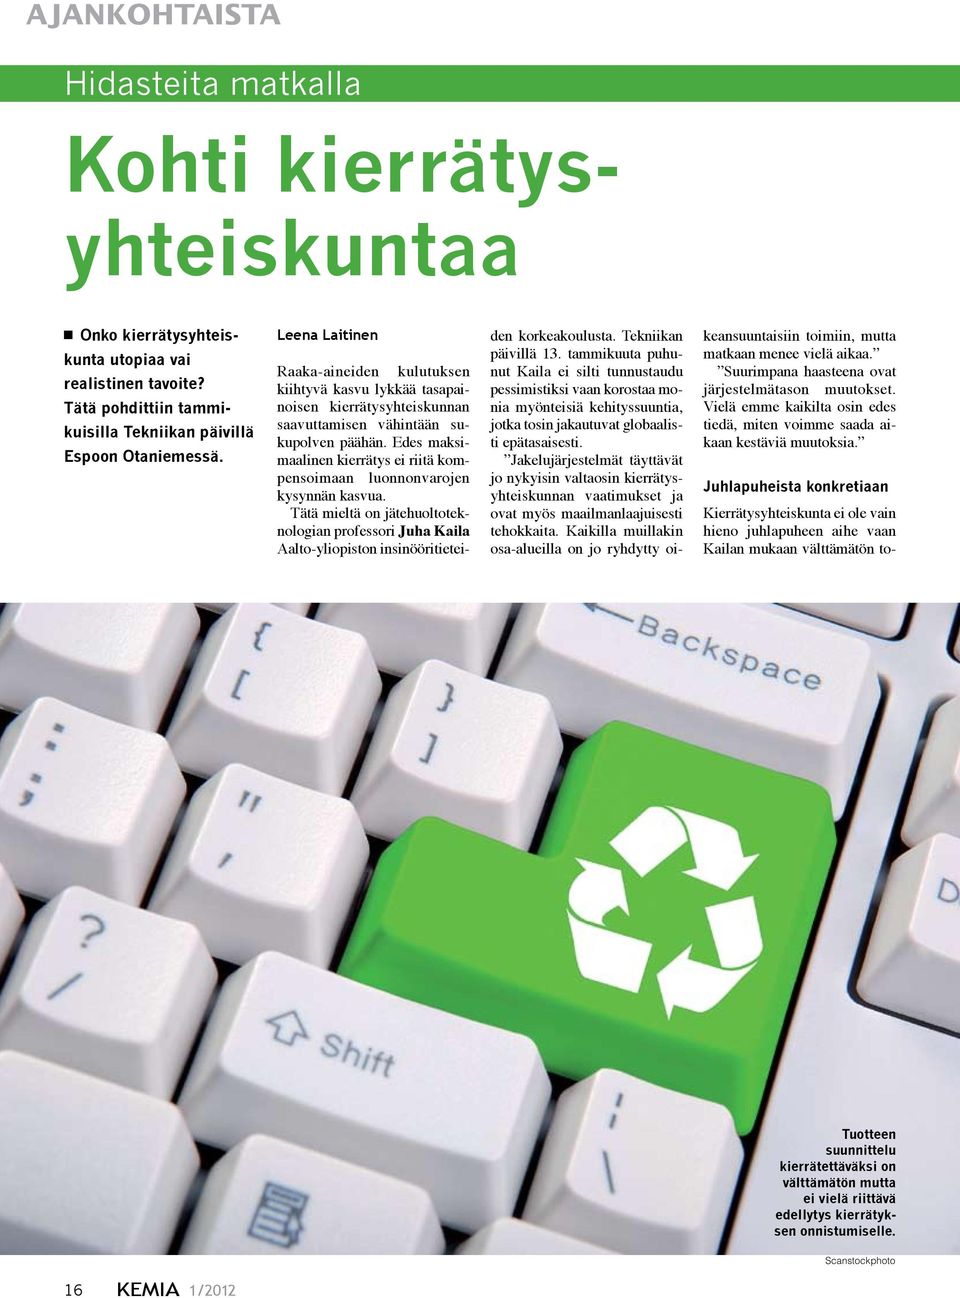 Edes maksimaalinen kierrätys ei riitä kompensoimaan luonnonvarojen kysynnän kasvua. Tätä mieltä on jätehuoltoteknologian professori Juha Kaila Aalto-yliopiston insinööritieteiden korkeakoulusta.